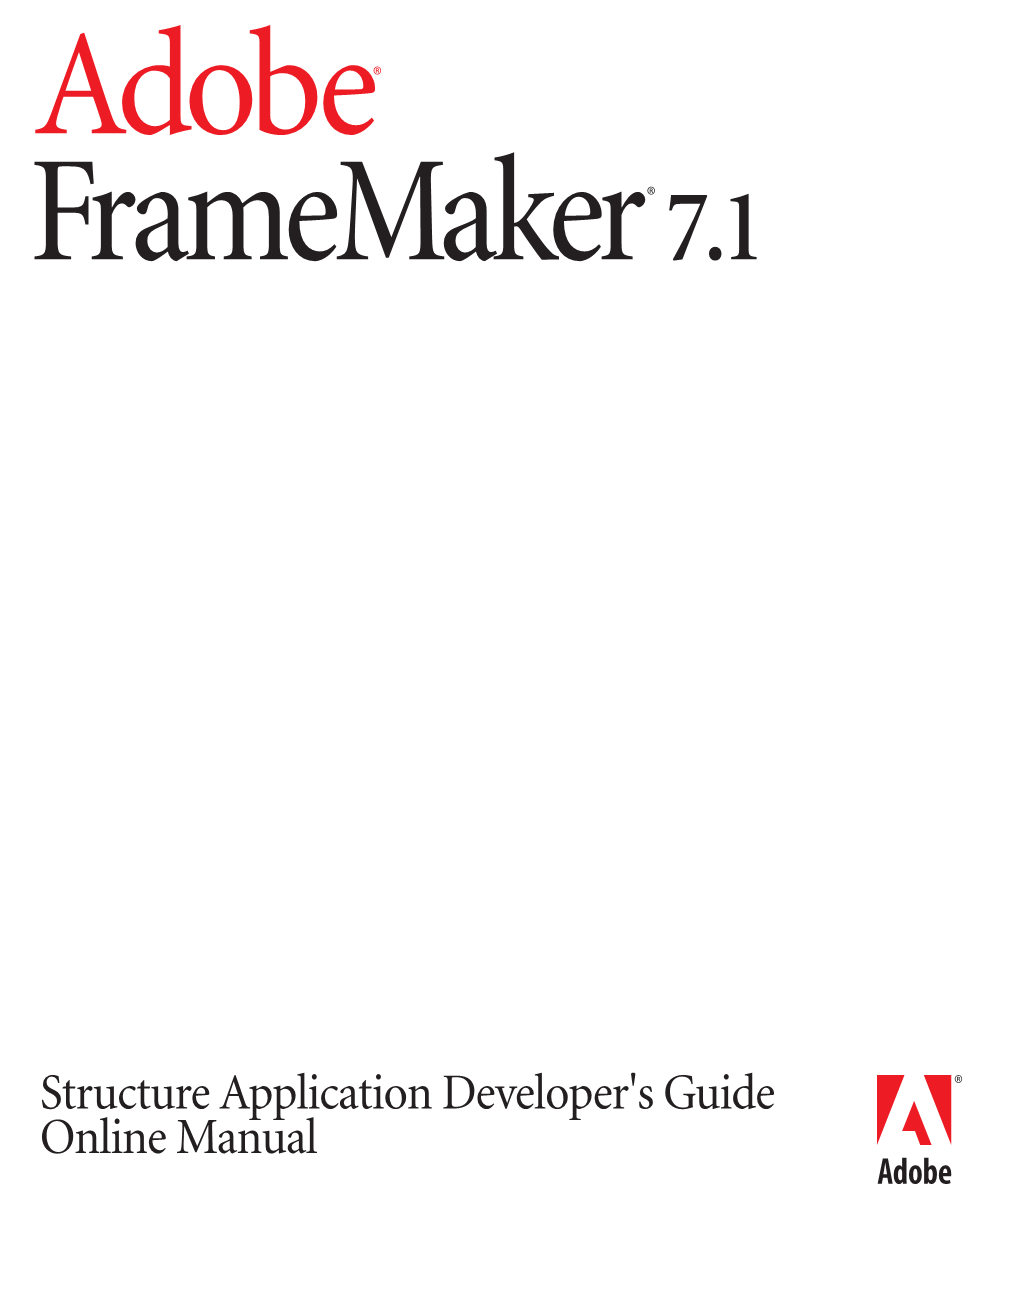 Adobe Framemaker 7.1 Structure Application Developer's Guide